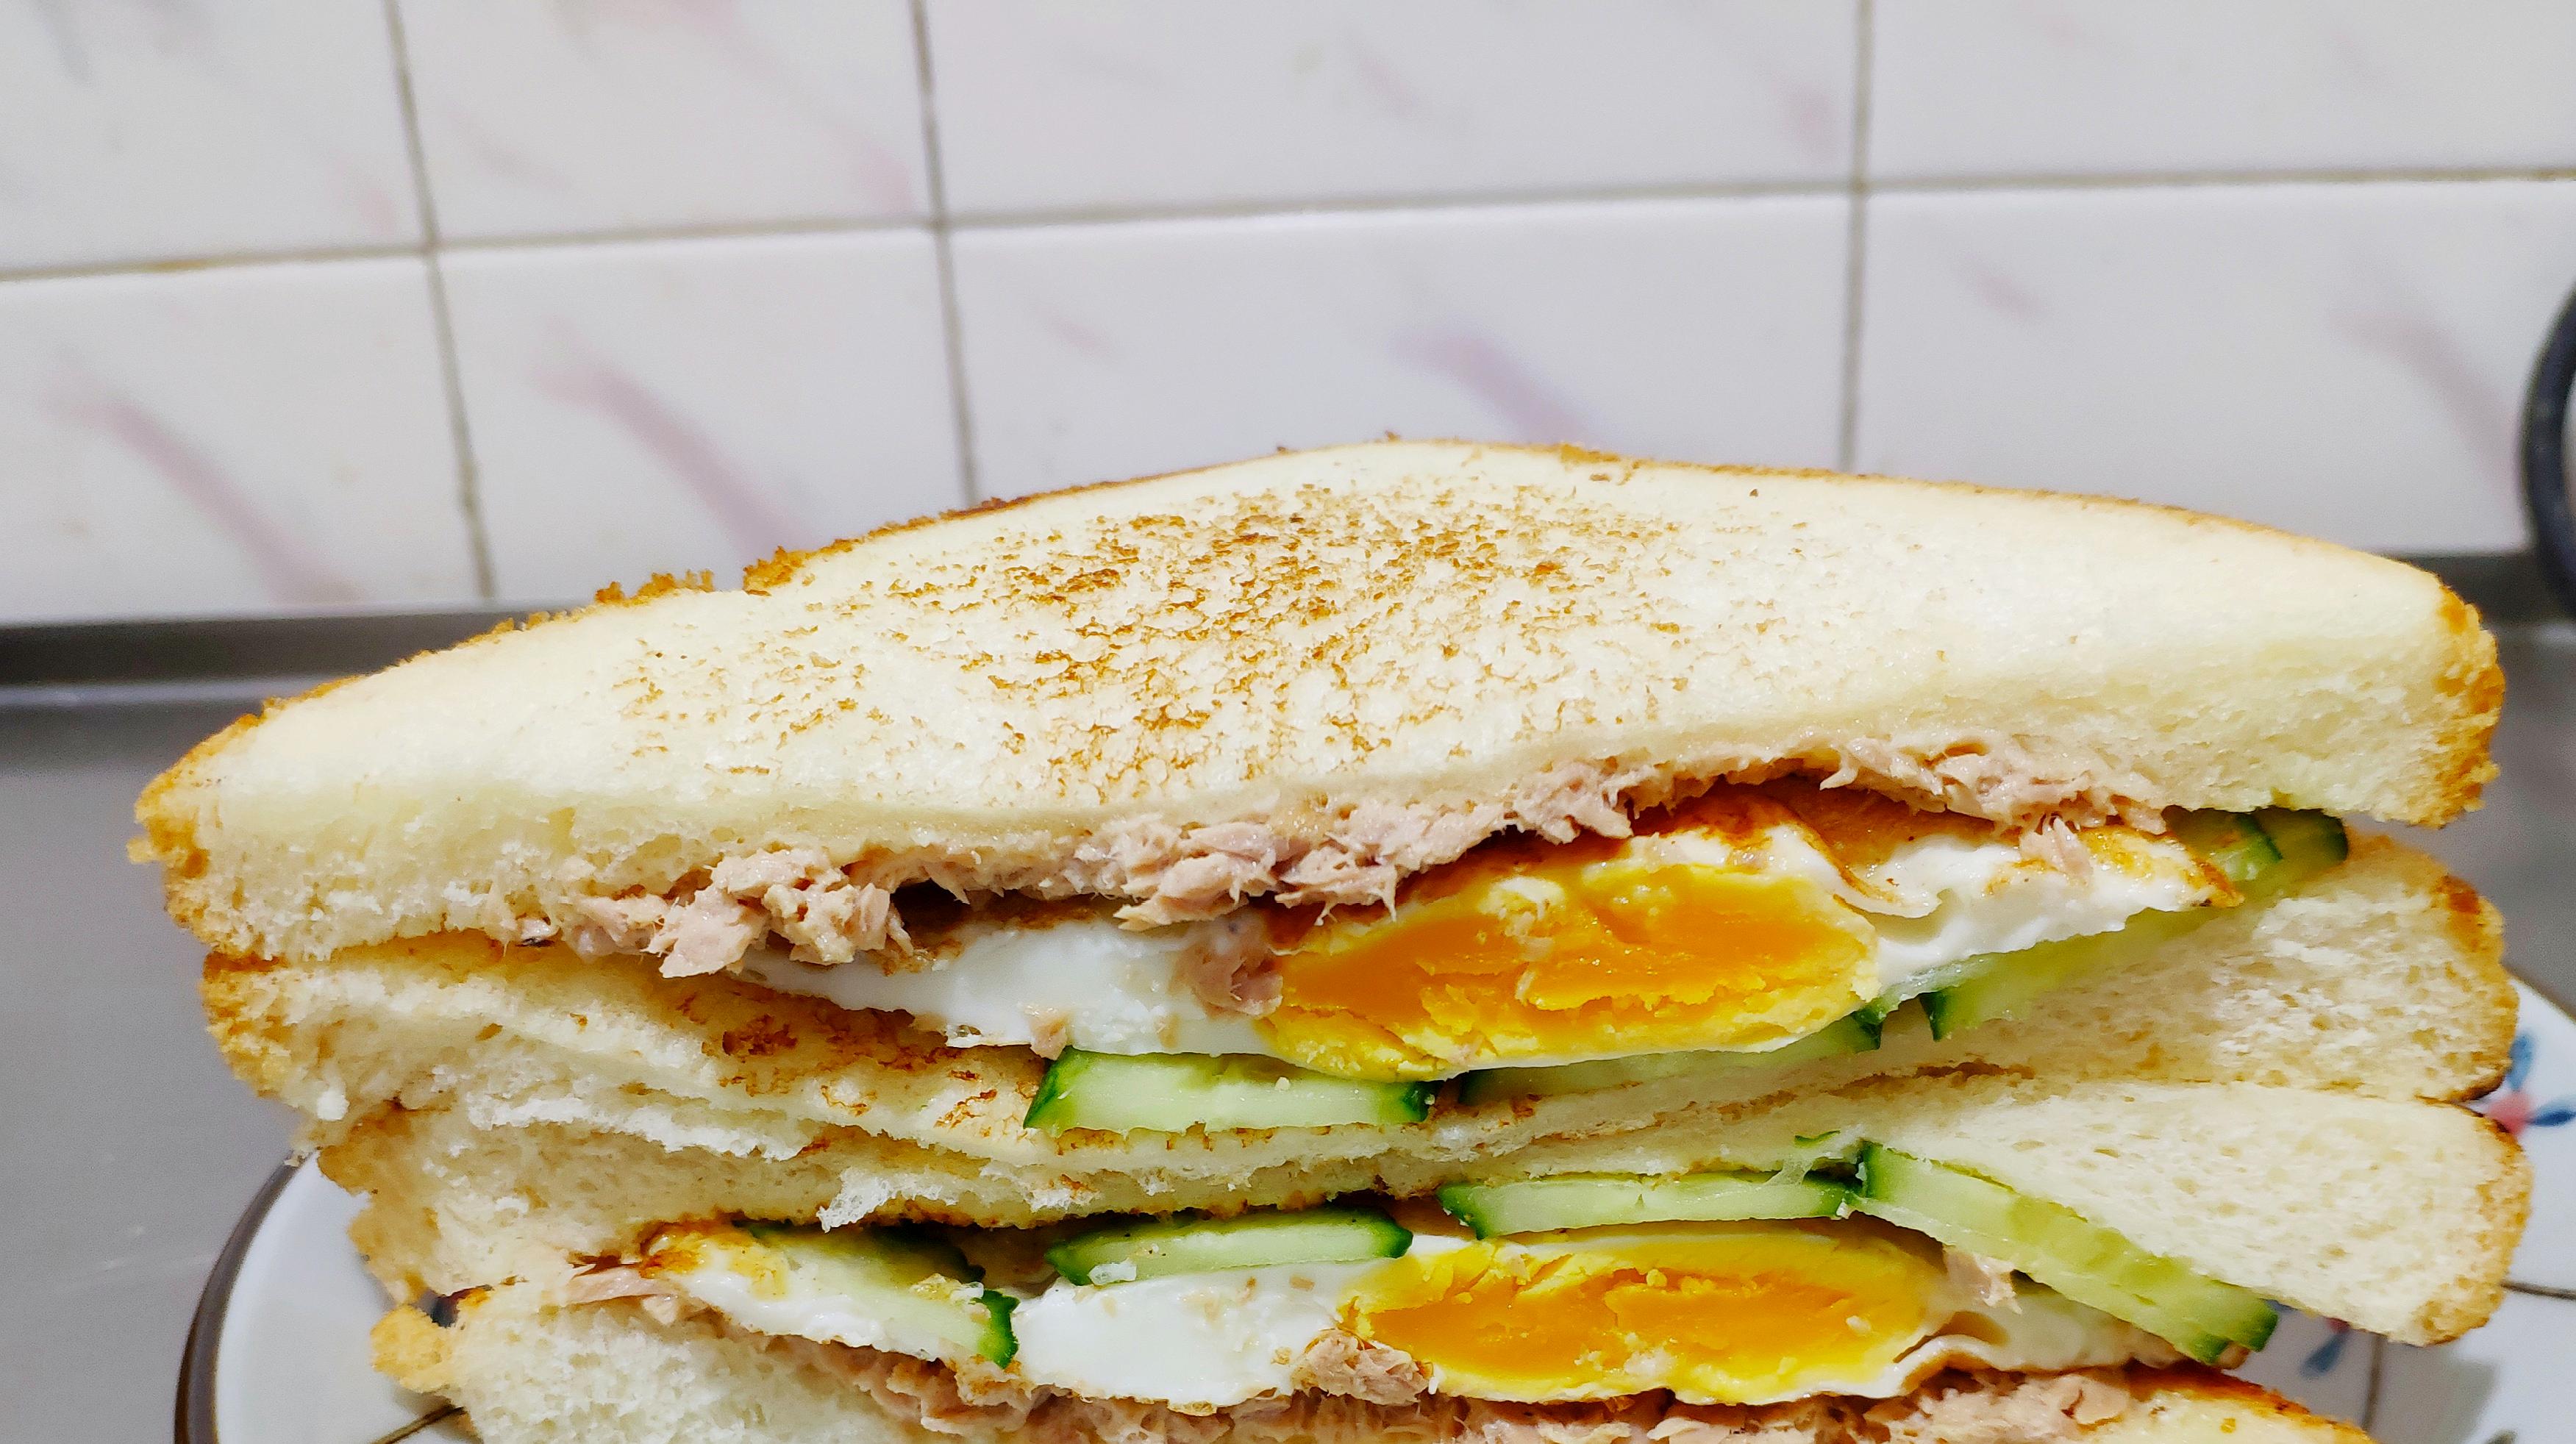 三明治早餐图片实拍图片